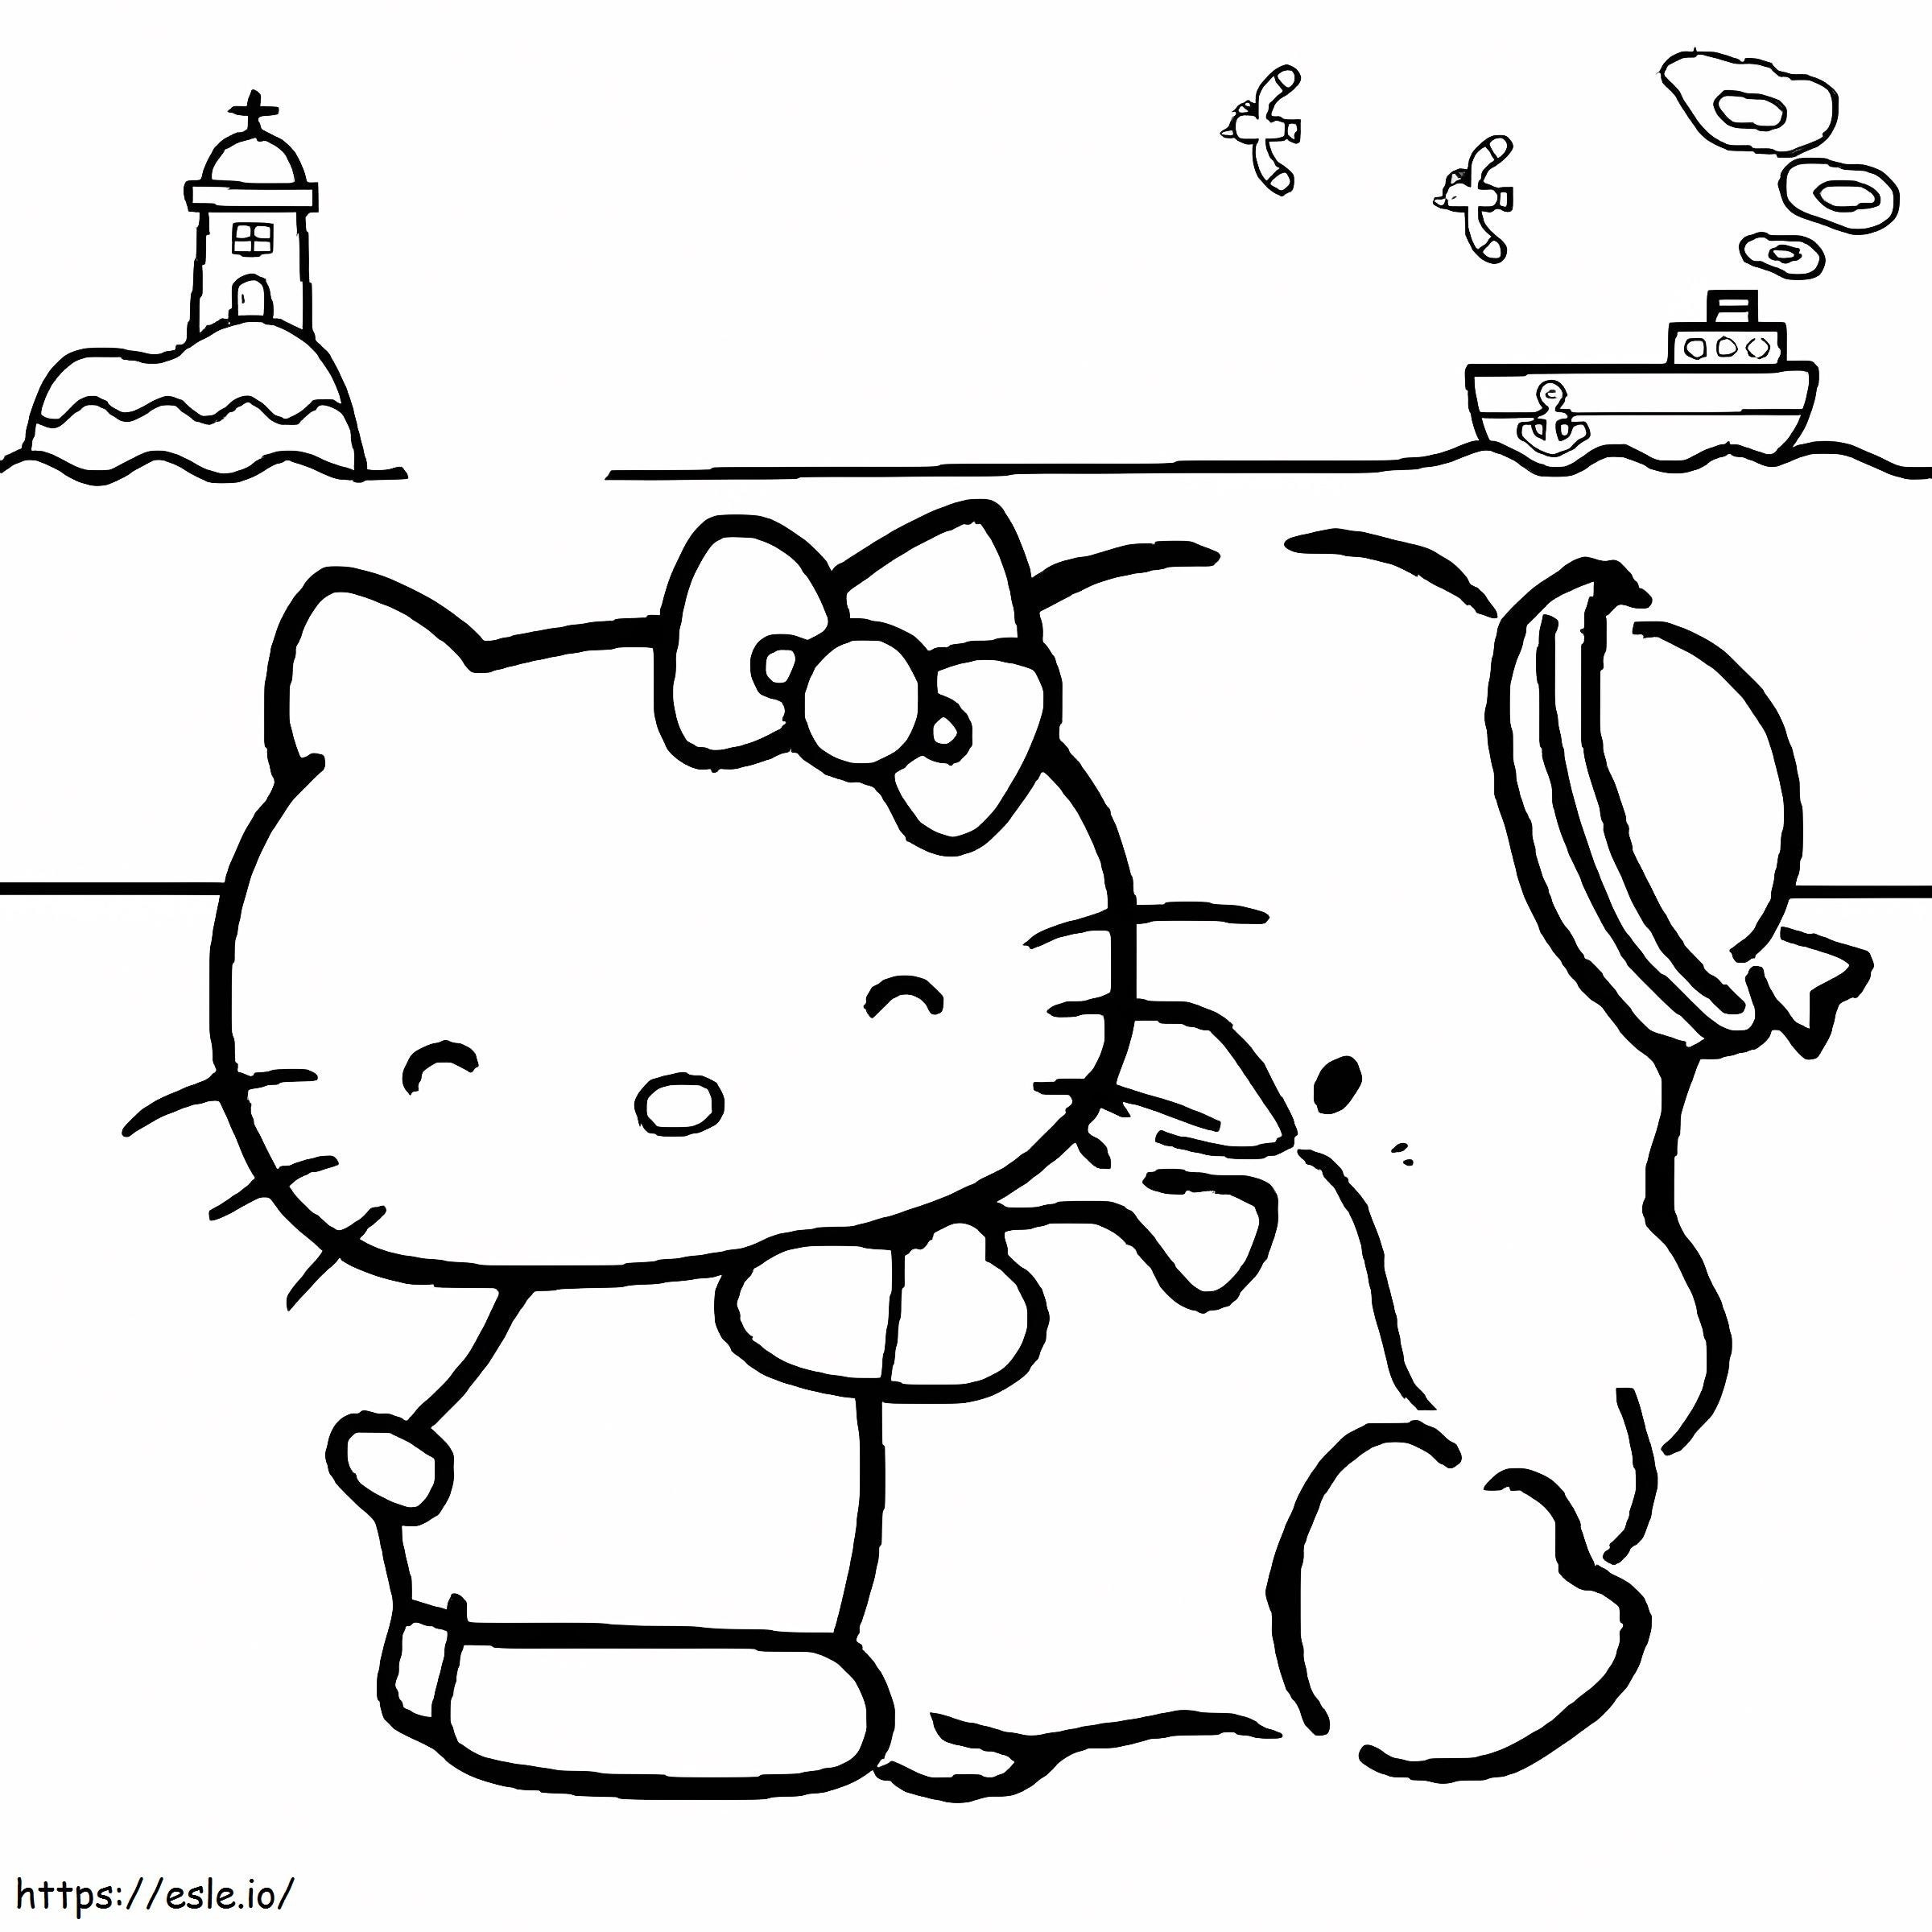 Hello Kitty e Tuxedo Sam para colorir